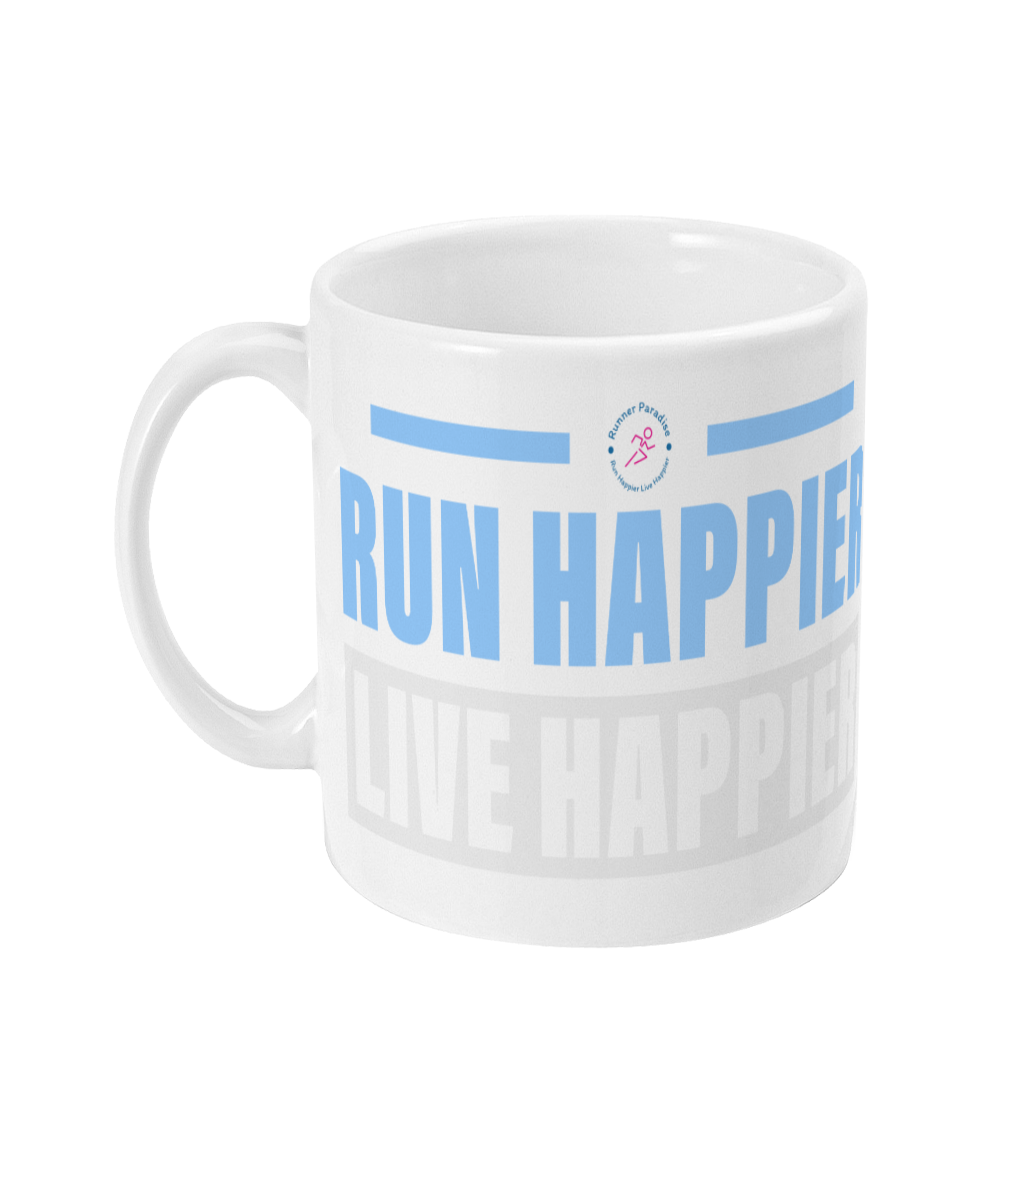 Runner Mug, Runner Gift, Running Mug, Gift For Runner, Running Gift, Marathon Mug, Marathon Gift, Marathon Runner Gift, Marathon Runner Mug